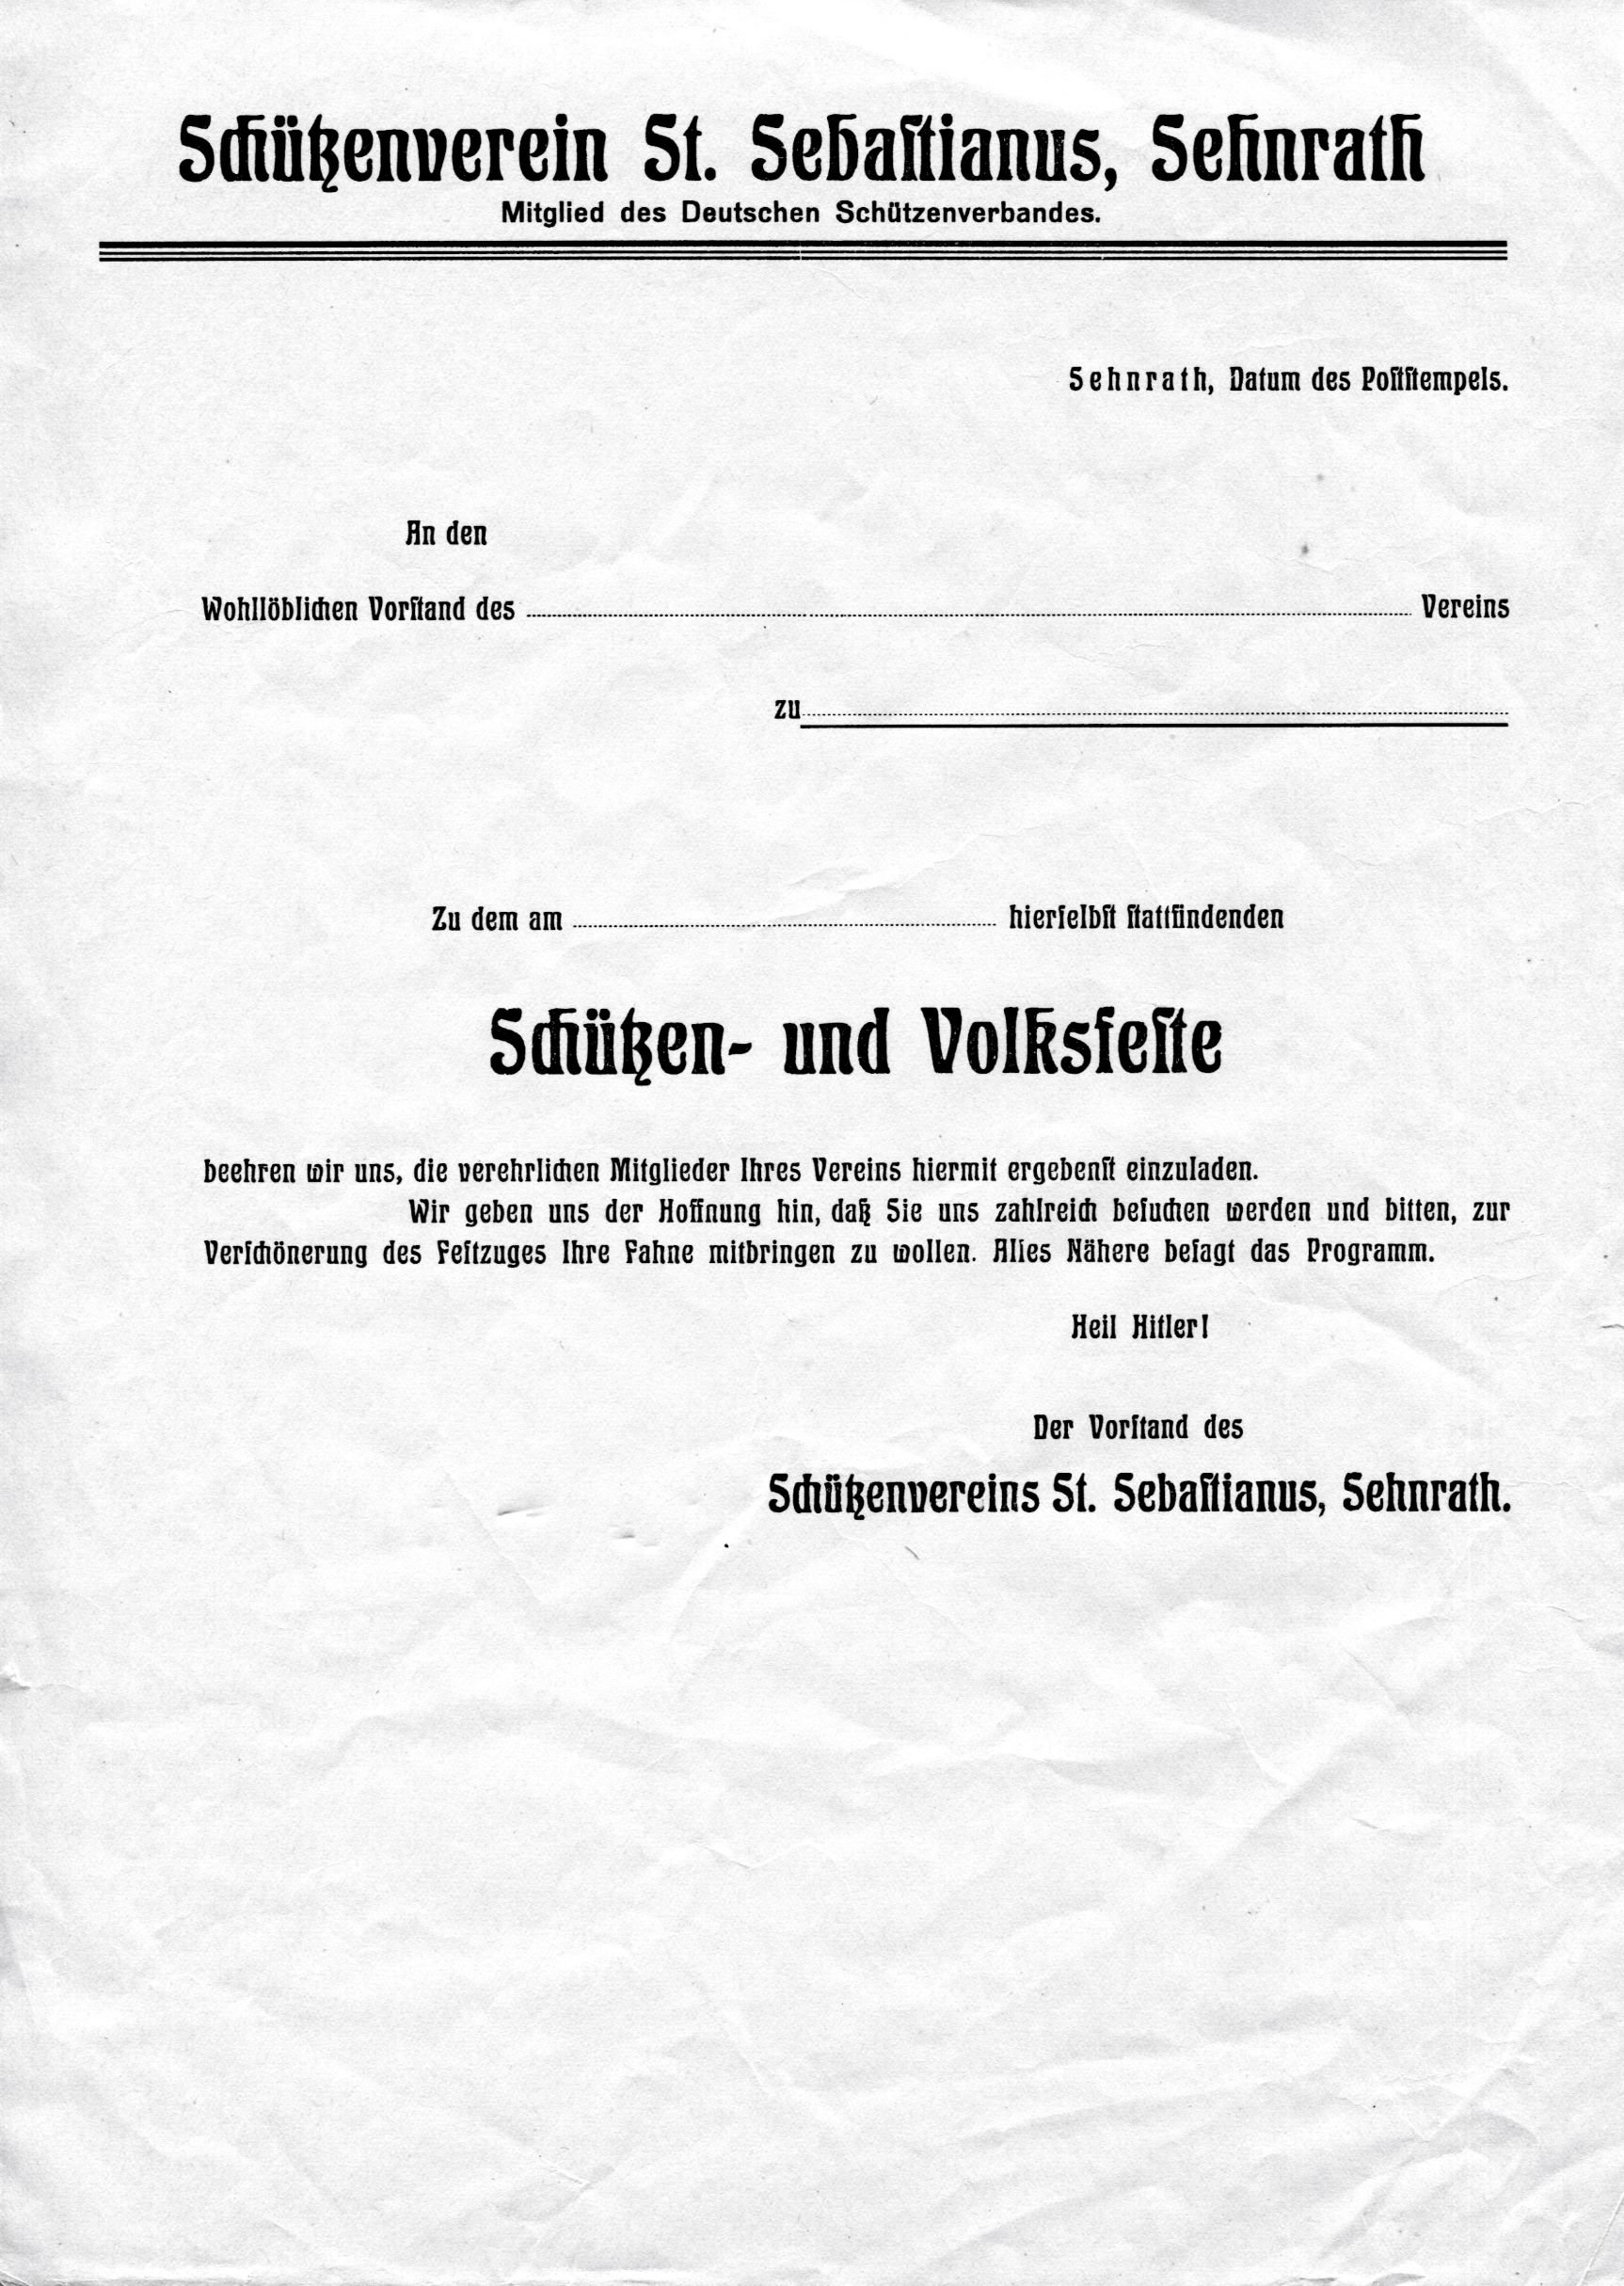 Schützen | Sebastianusschützen | Einladung zum Schützen- und Volksfeste | 1933-1945 (Heimatmuseum Sindorf CC BY-NC-SA)